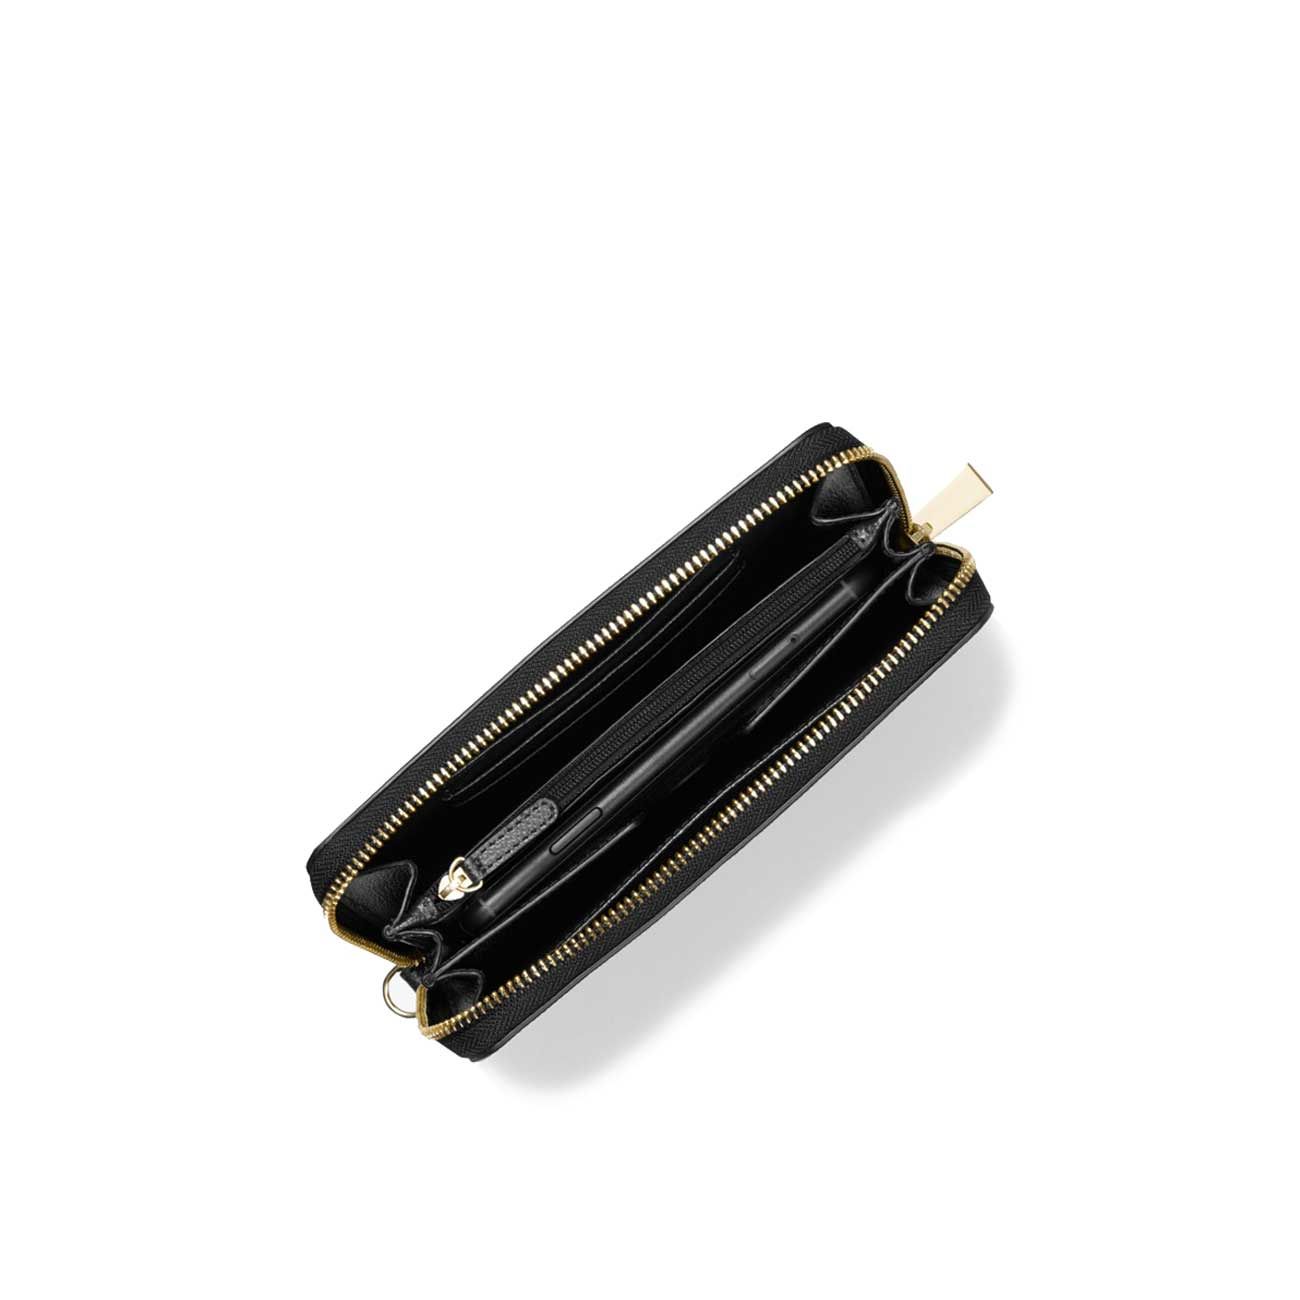 Adele Metallic Woven Leather Smartphone Wallet